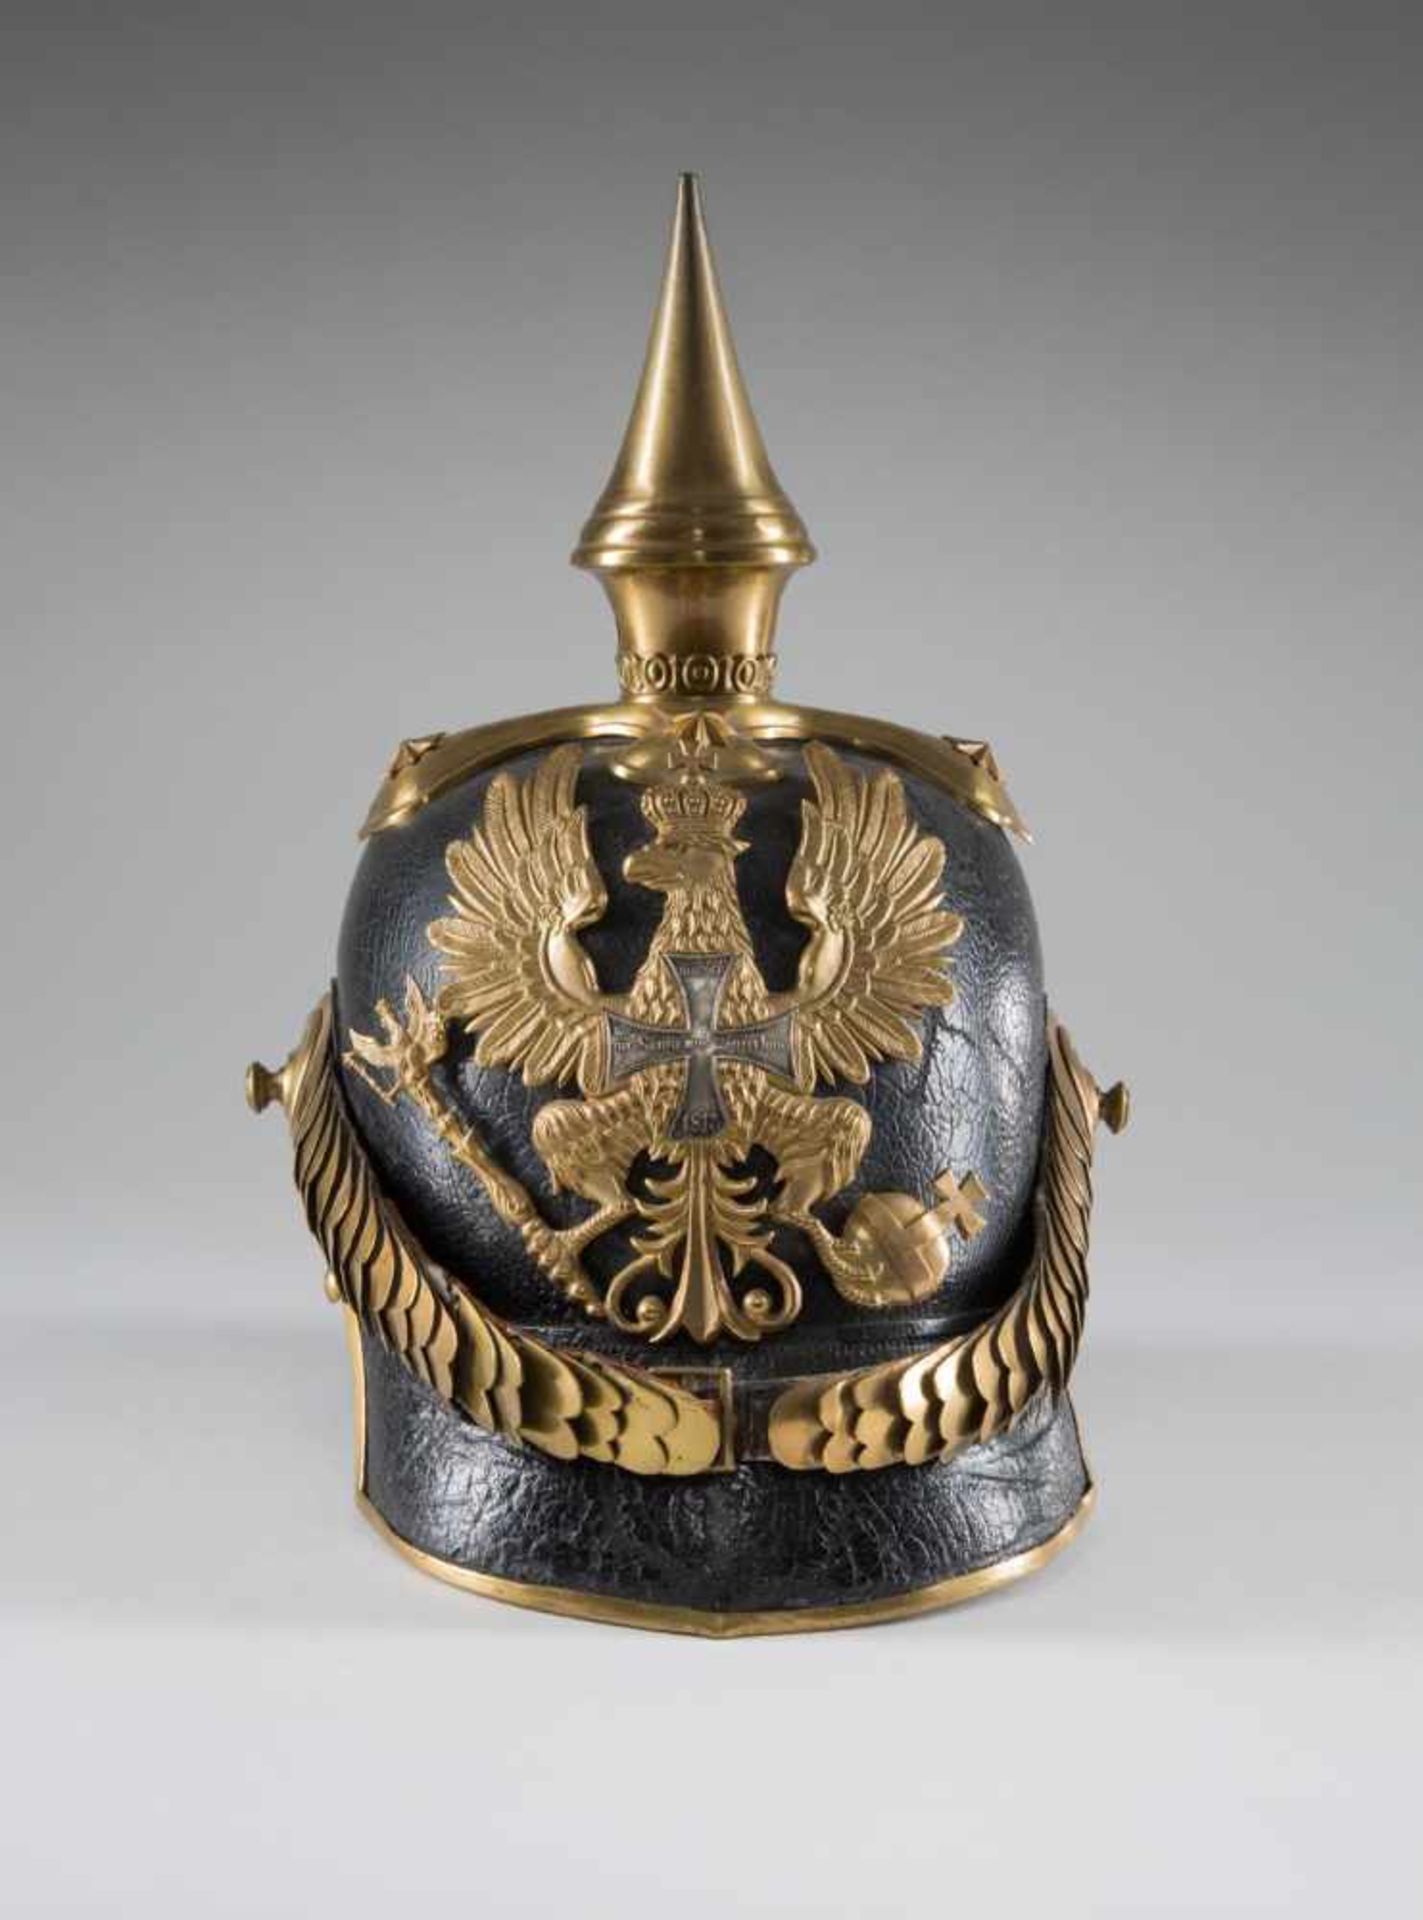 Helm für Offiziere der Infanterie, Modell 1843. Hoher Lederhelm mit vergoldeten Beschlägen, gewölbte